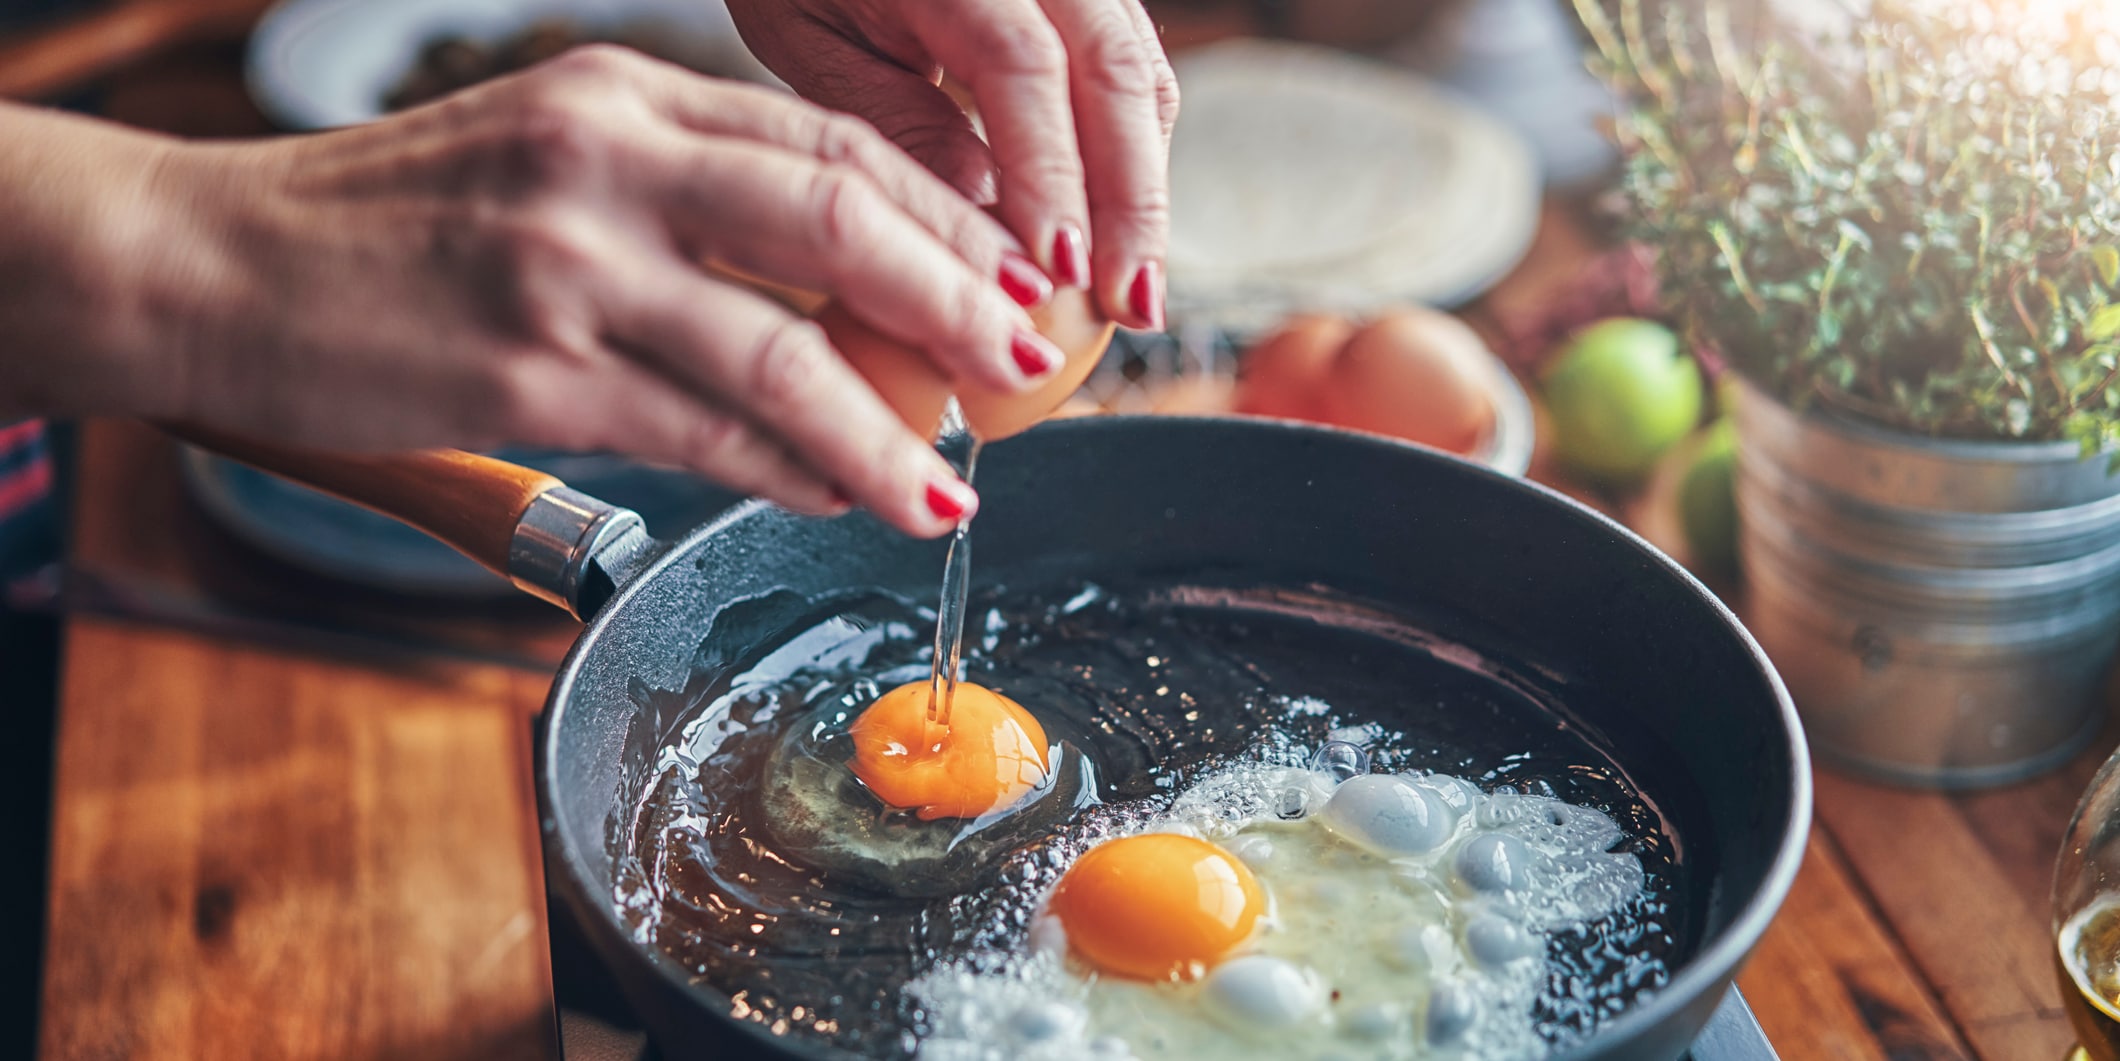 experten erklären - eier sind nicht verboten! wie sie ihre cholesterin-werte senken